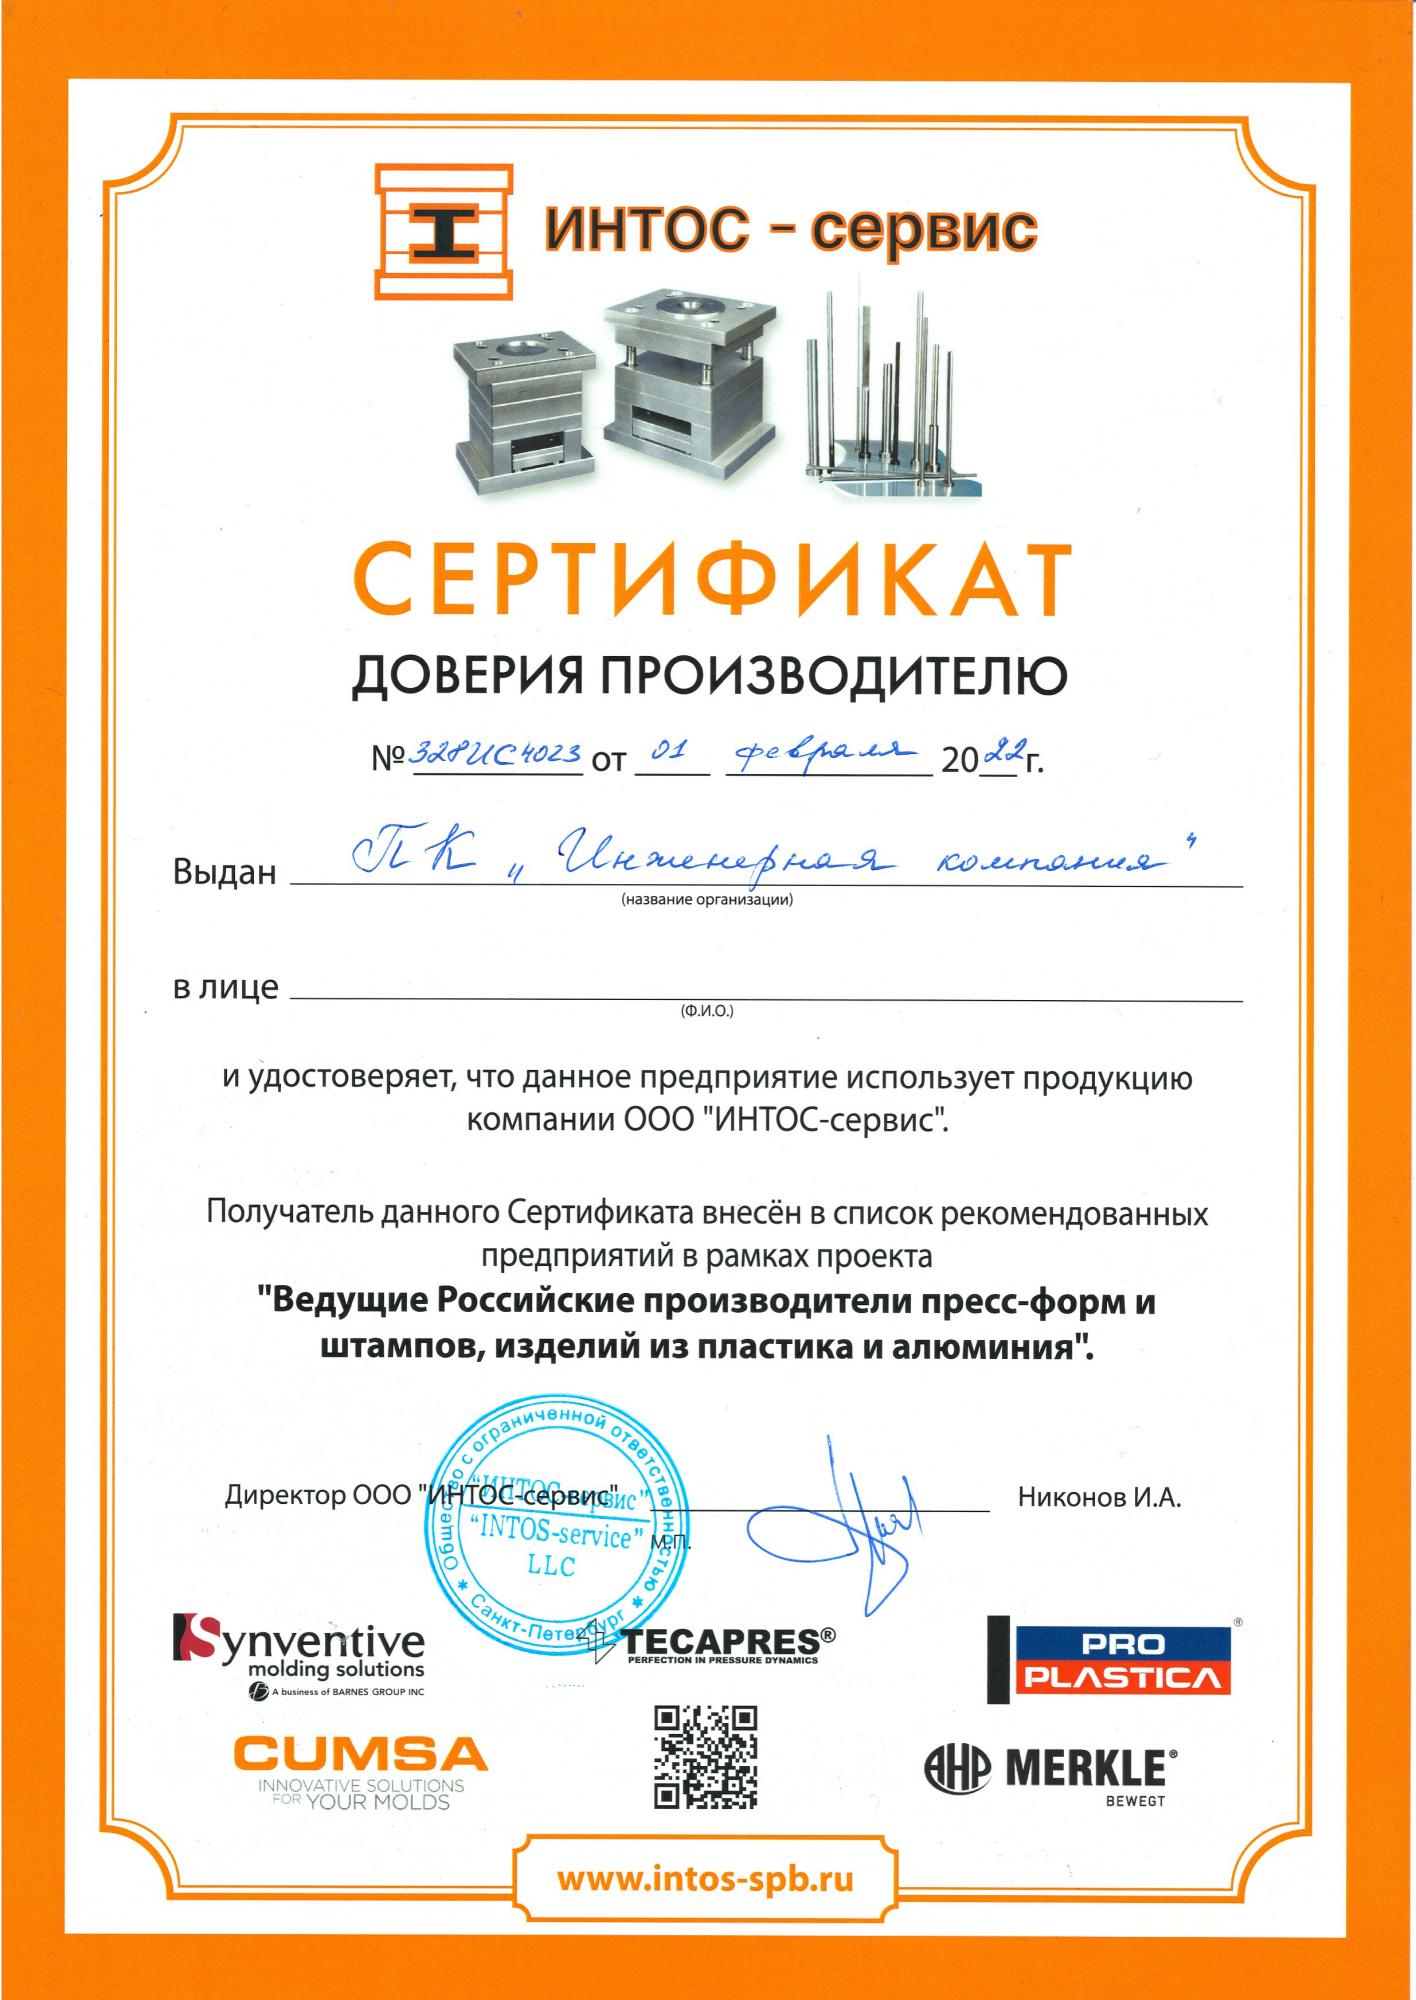 Сертификат доверия производителю от ИНТОС-сервис